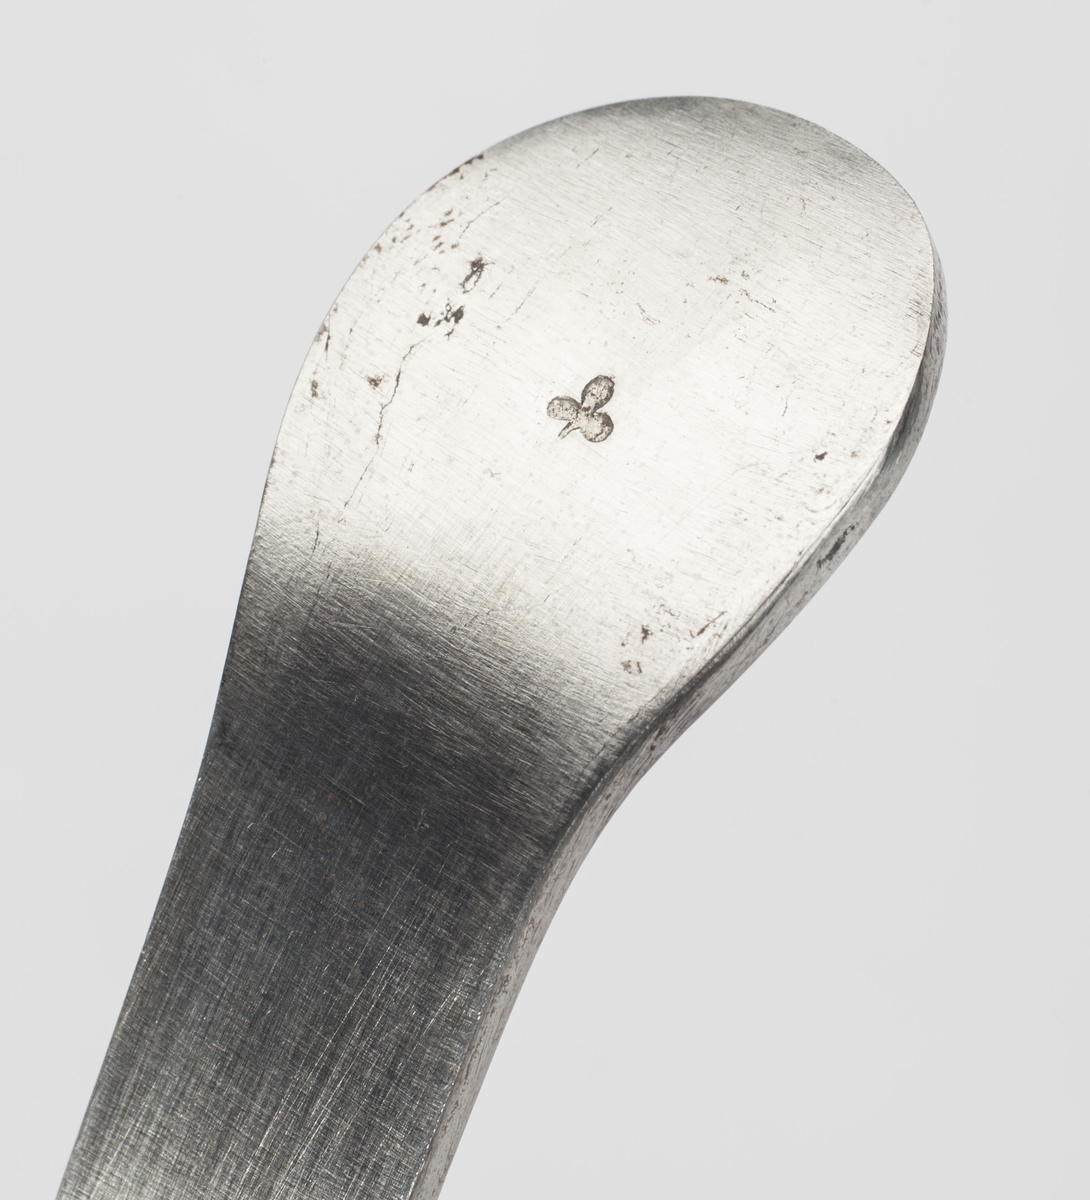 Instrument med en flat ende og en krum ende med et spor. Sonden er bøyd for å passe til urinrørets krumning hos mannen.